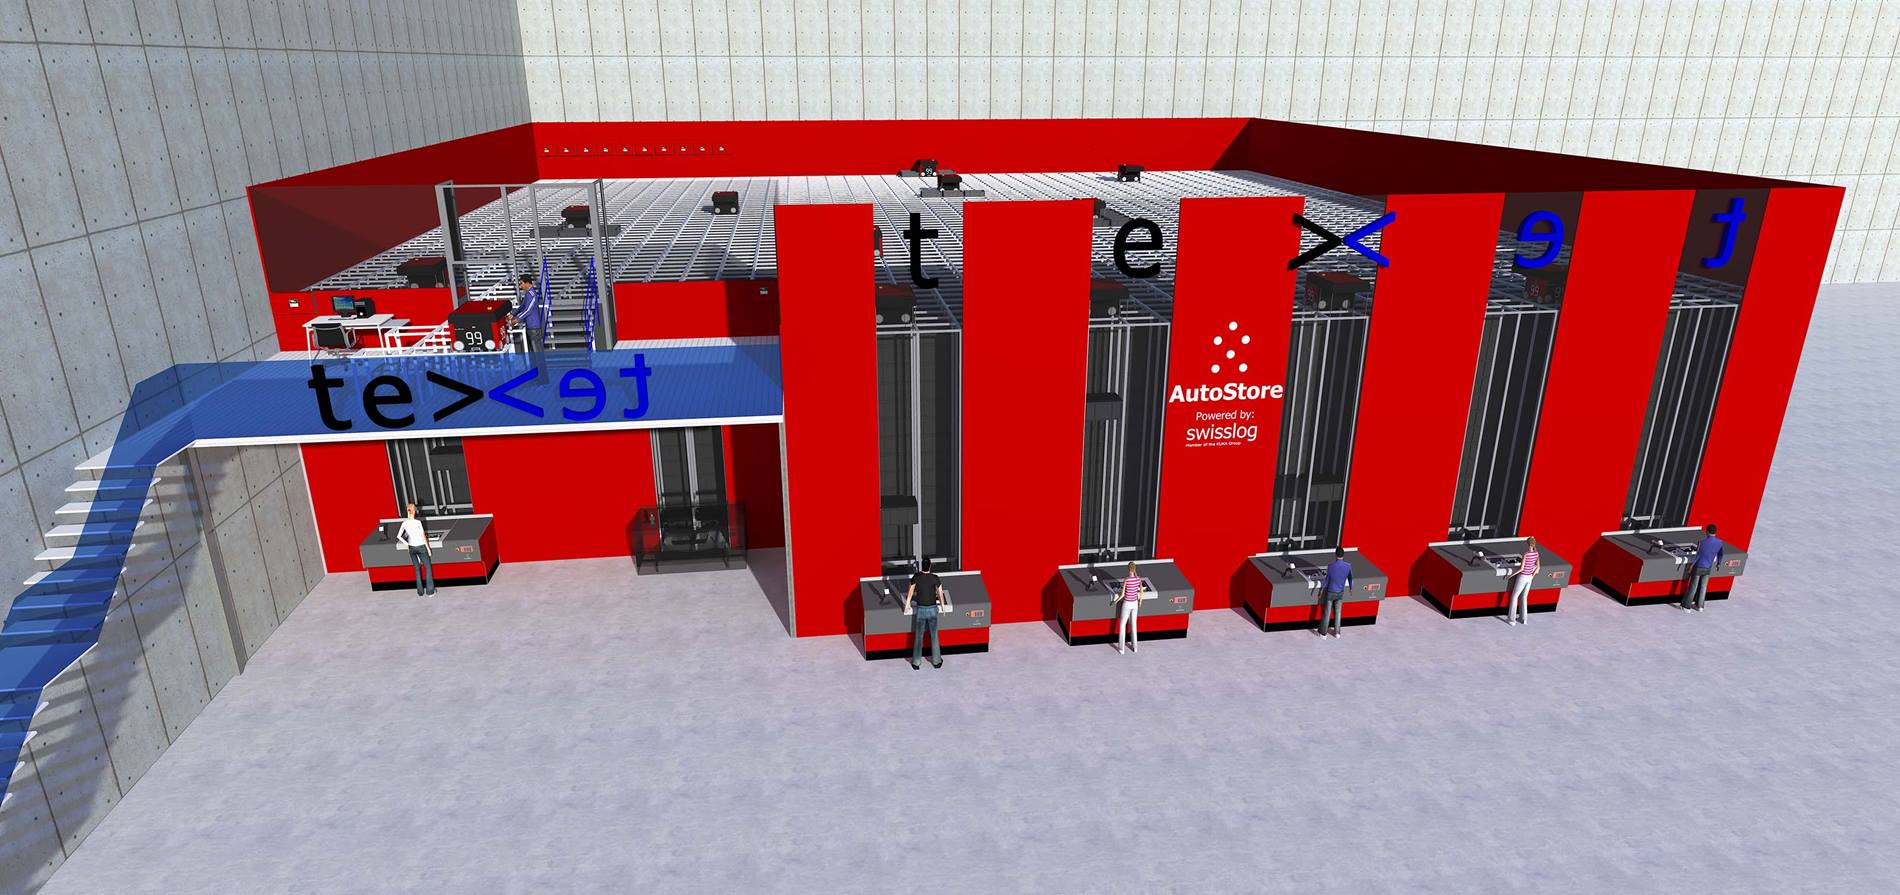 Het AutoStore systeem bij Texet telt 30.000 opslagbakken, 18 robots, 6 werkstations voor de invoer en orderpicking van artikelen.